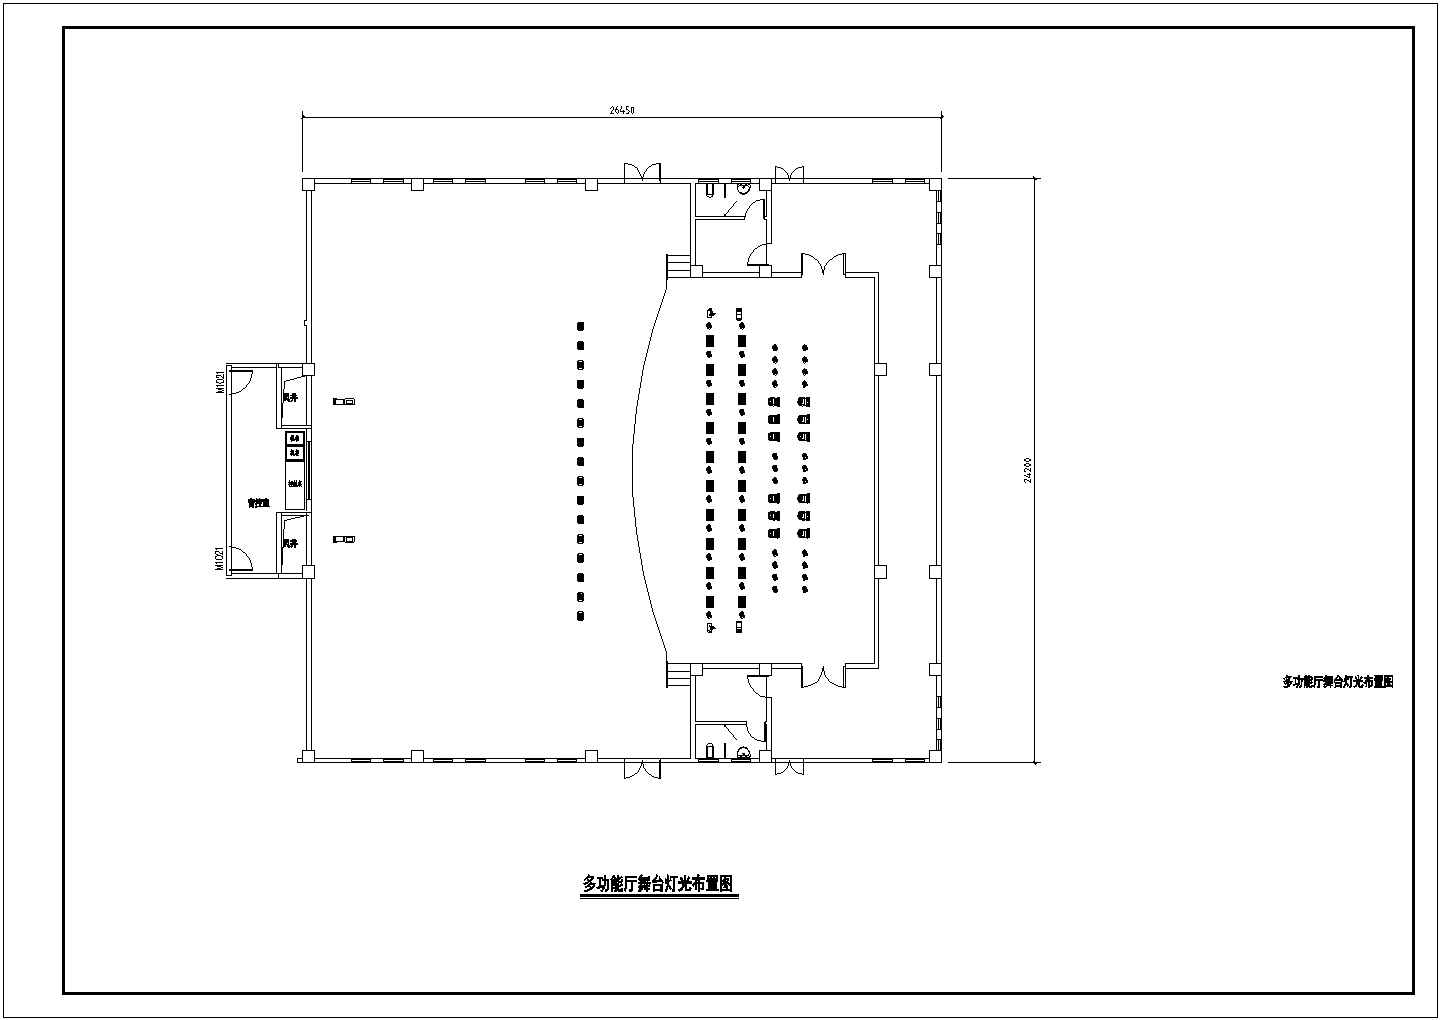 某文化馆图书馆会议系统CAD图纸